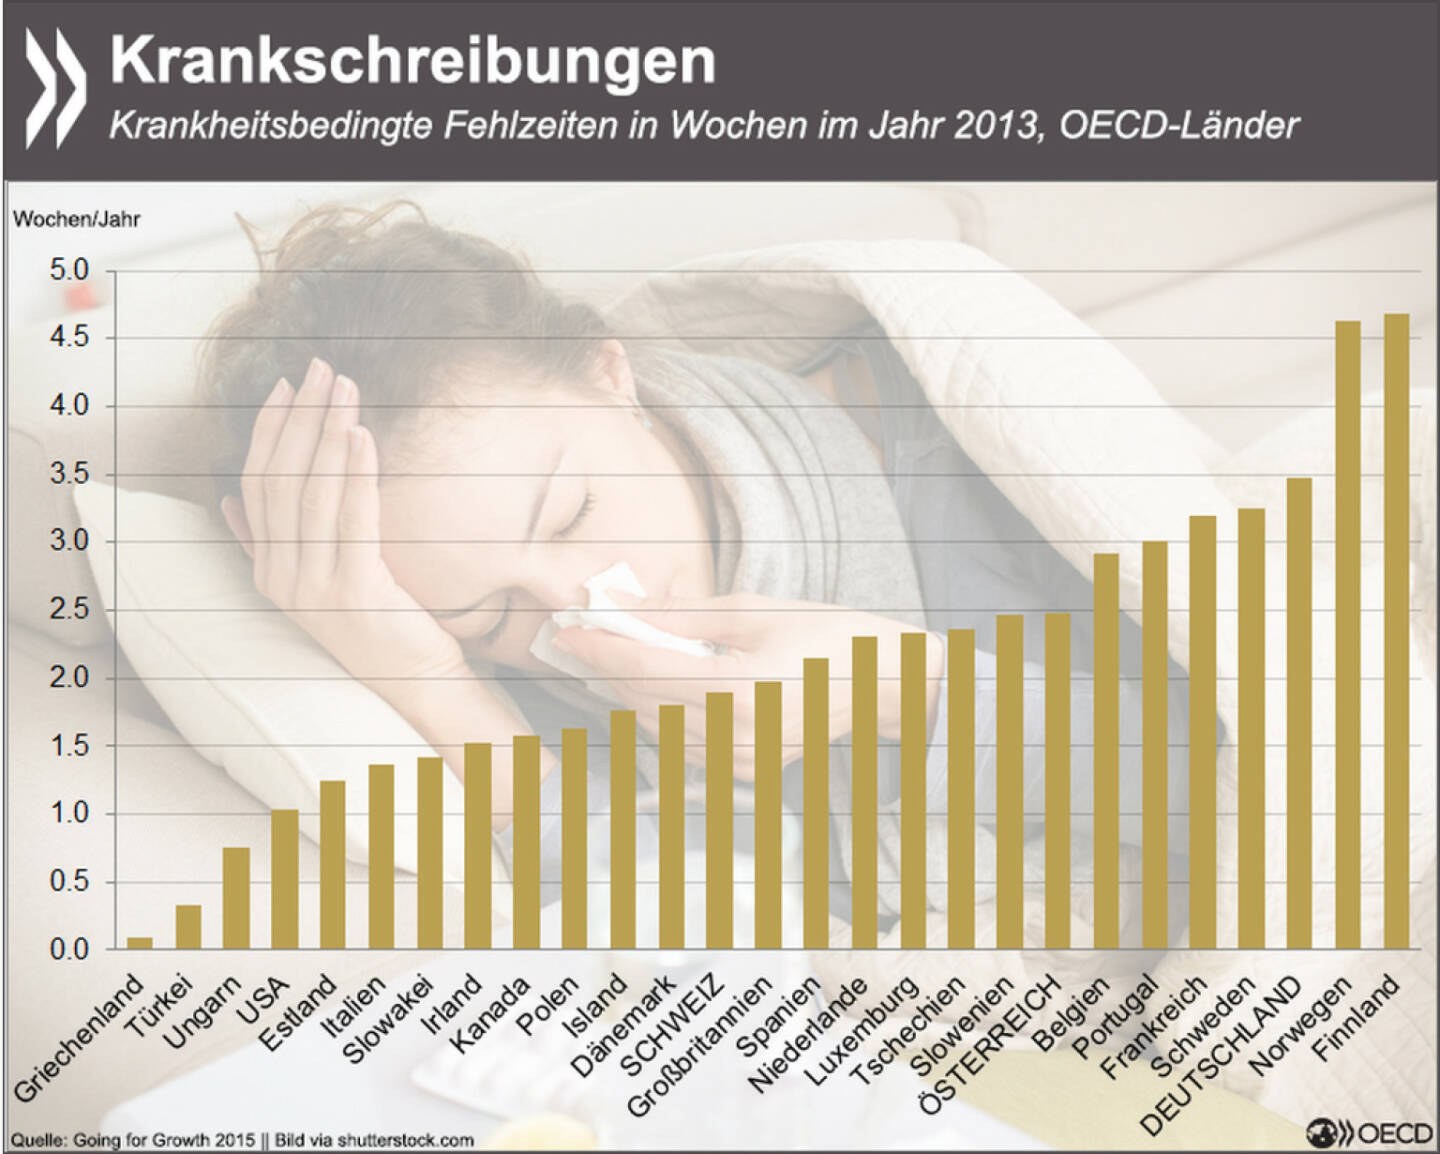 Ungesundes Klima? Nur Norweger und Finnen sind häufiger krankgeschrieben als deutsche Arbeitnehmer. In Griechenland und der Türkei hingegen sind krankheitsbedingte Ausfälle minimal.
In der Studie findet Ihr auch Infos zu Mindestlohn, Steuern & Strukturreformen: http://bit.ly/1FtpCvV (S. 322)